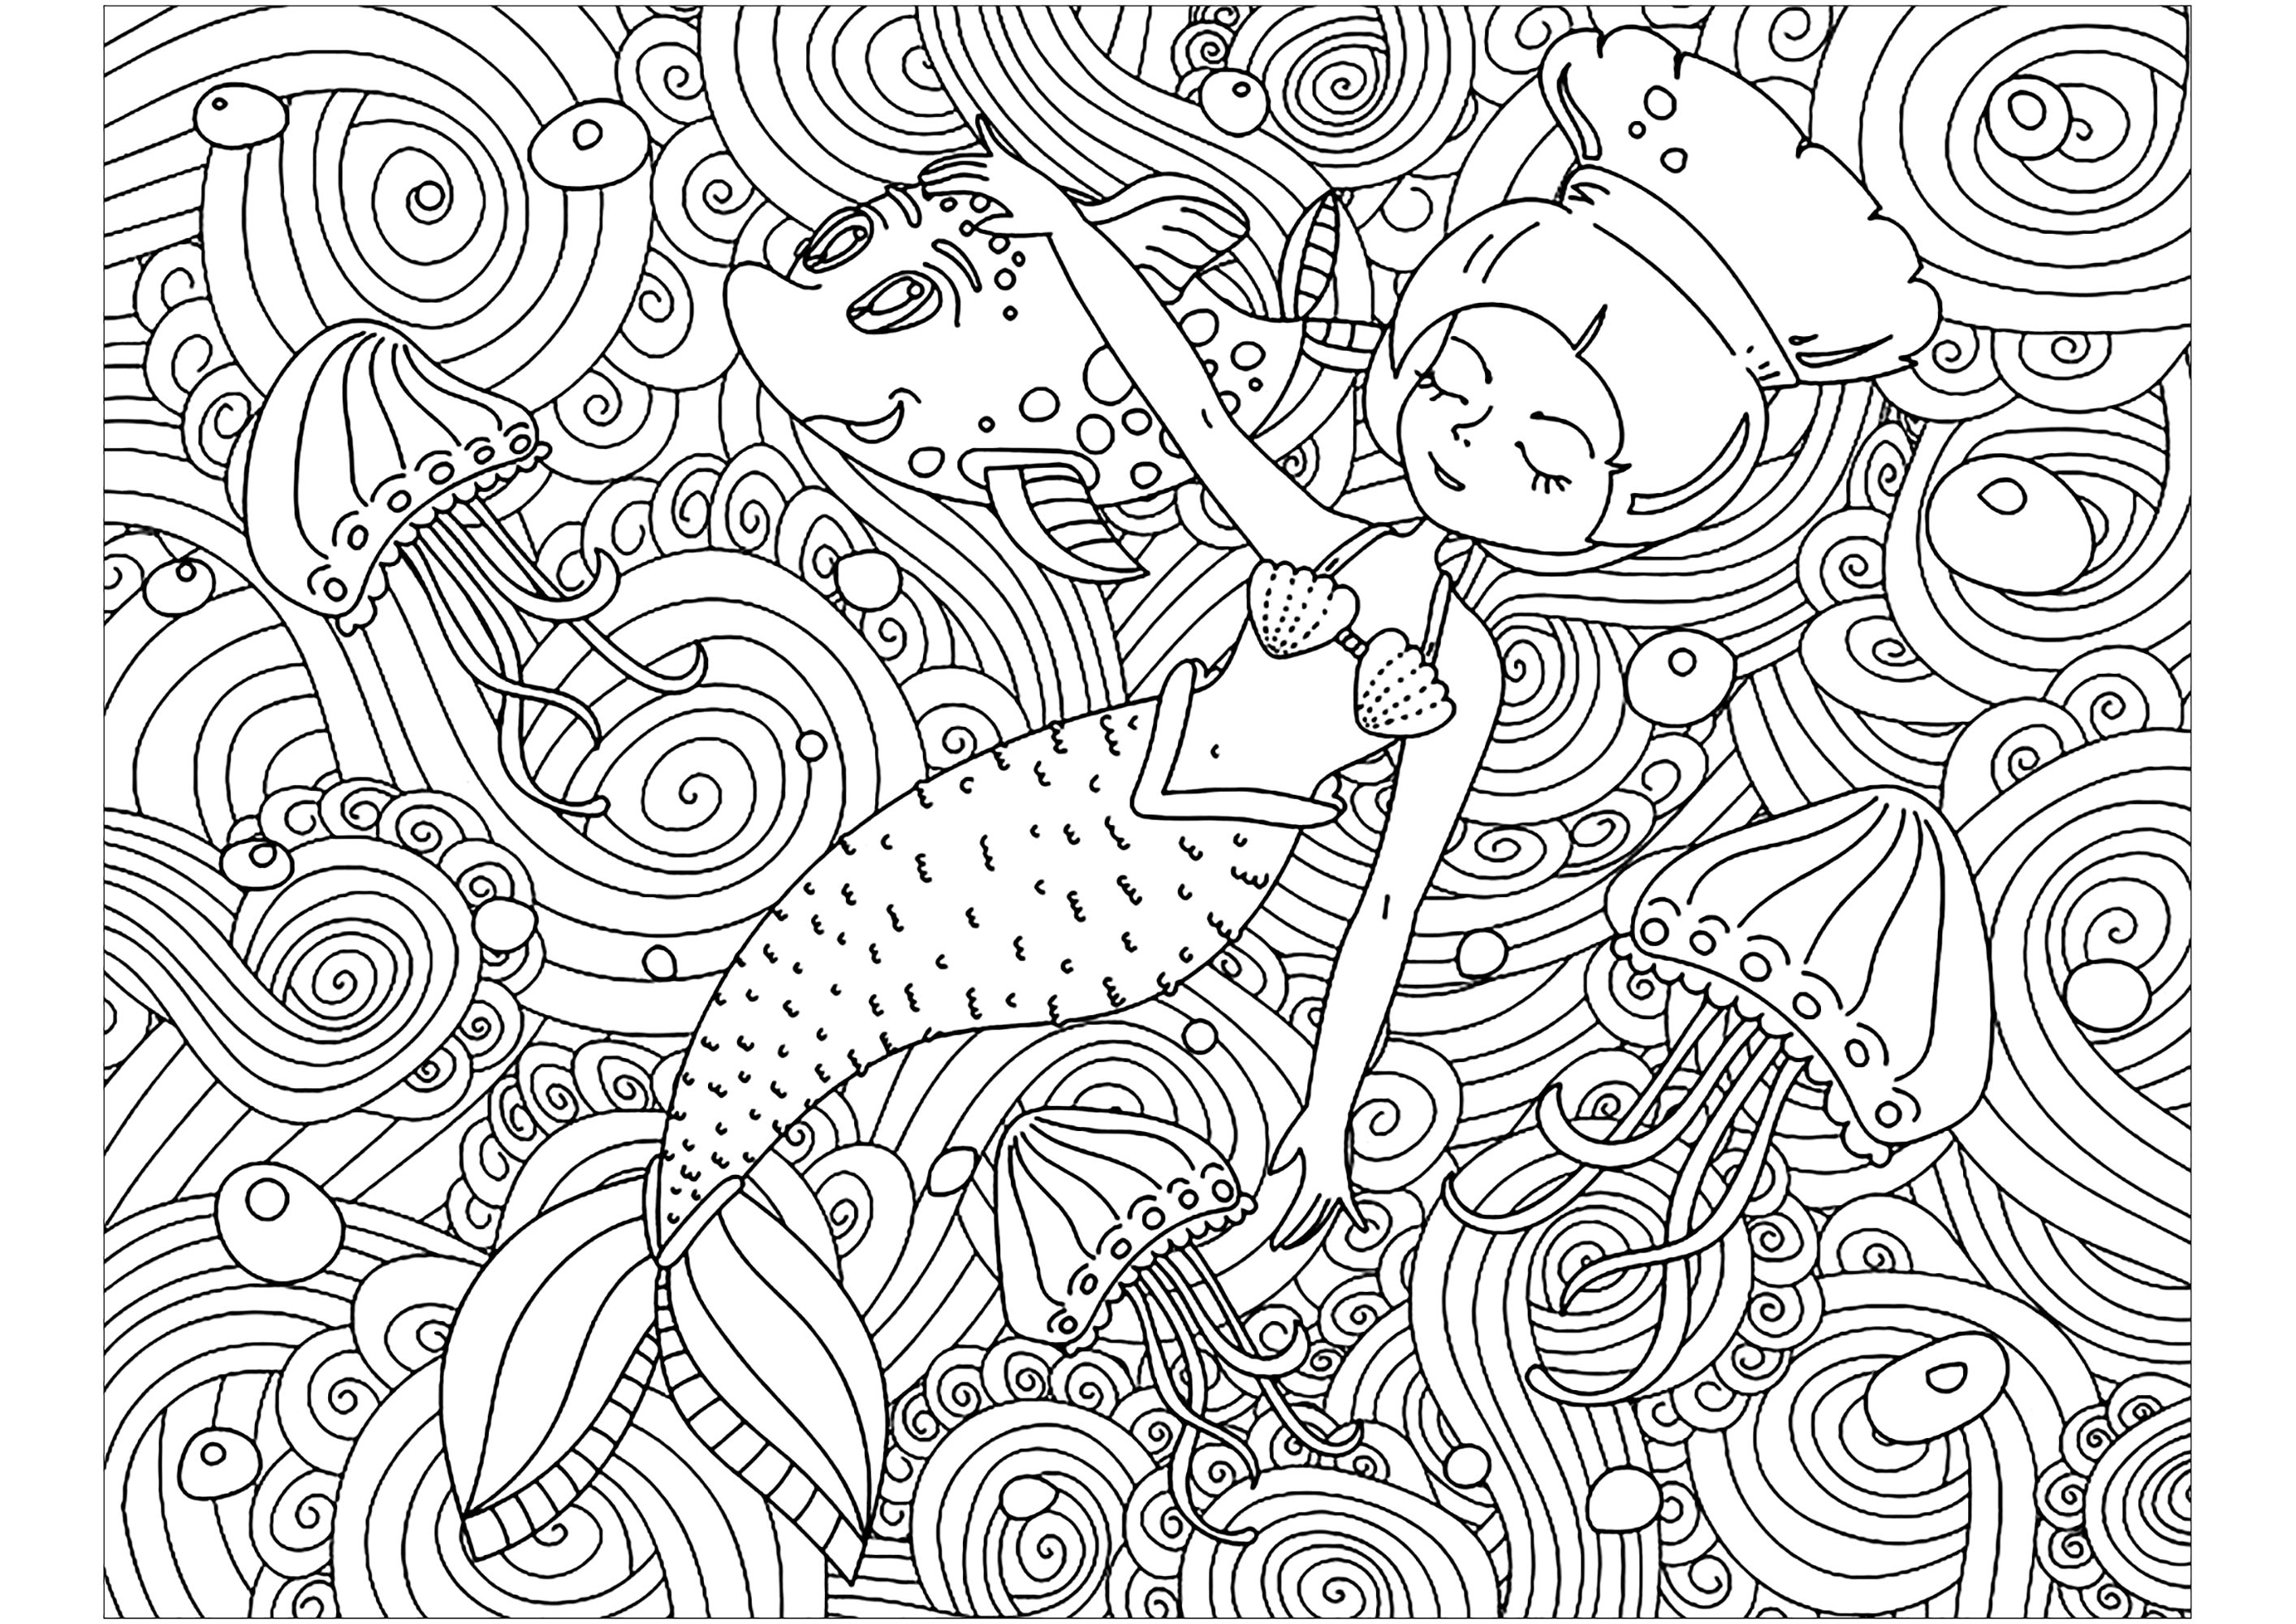 Mermaid et jolis motifs. Coloriez cette petite sirène qui dort calmement dans une mer pleine de motifs magnifiques et complexes, Source : 123rf   Artiste : Lexver